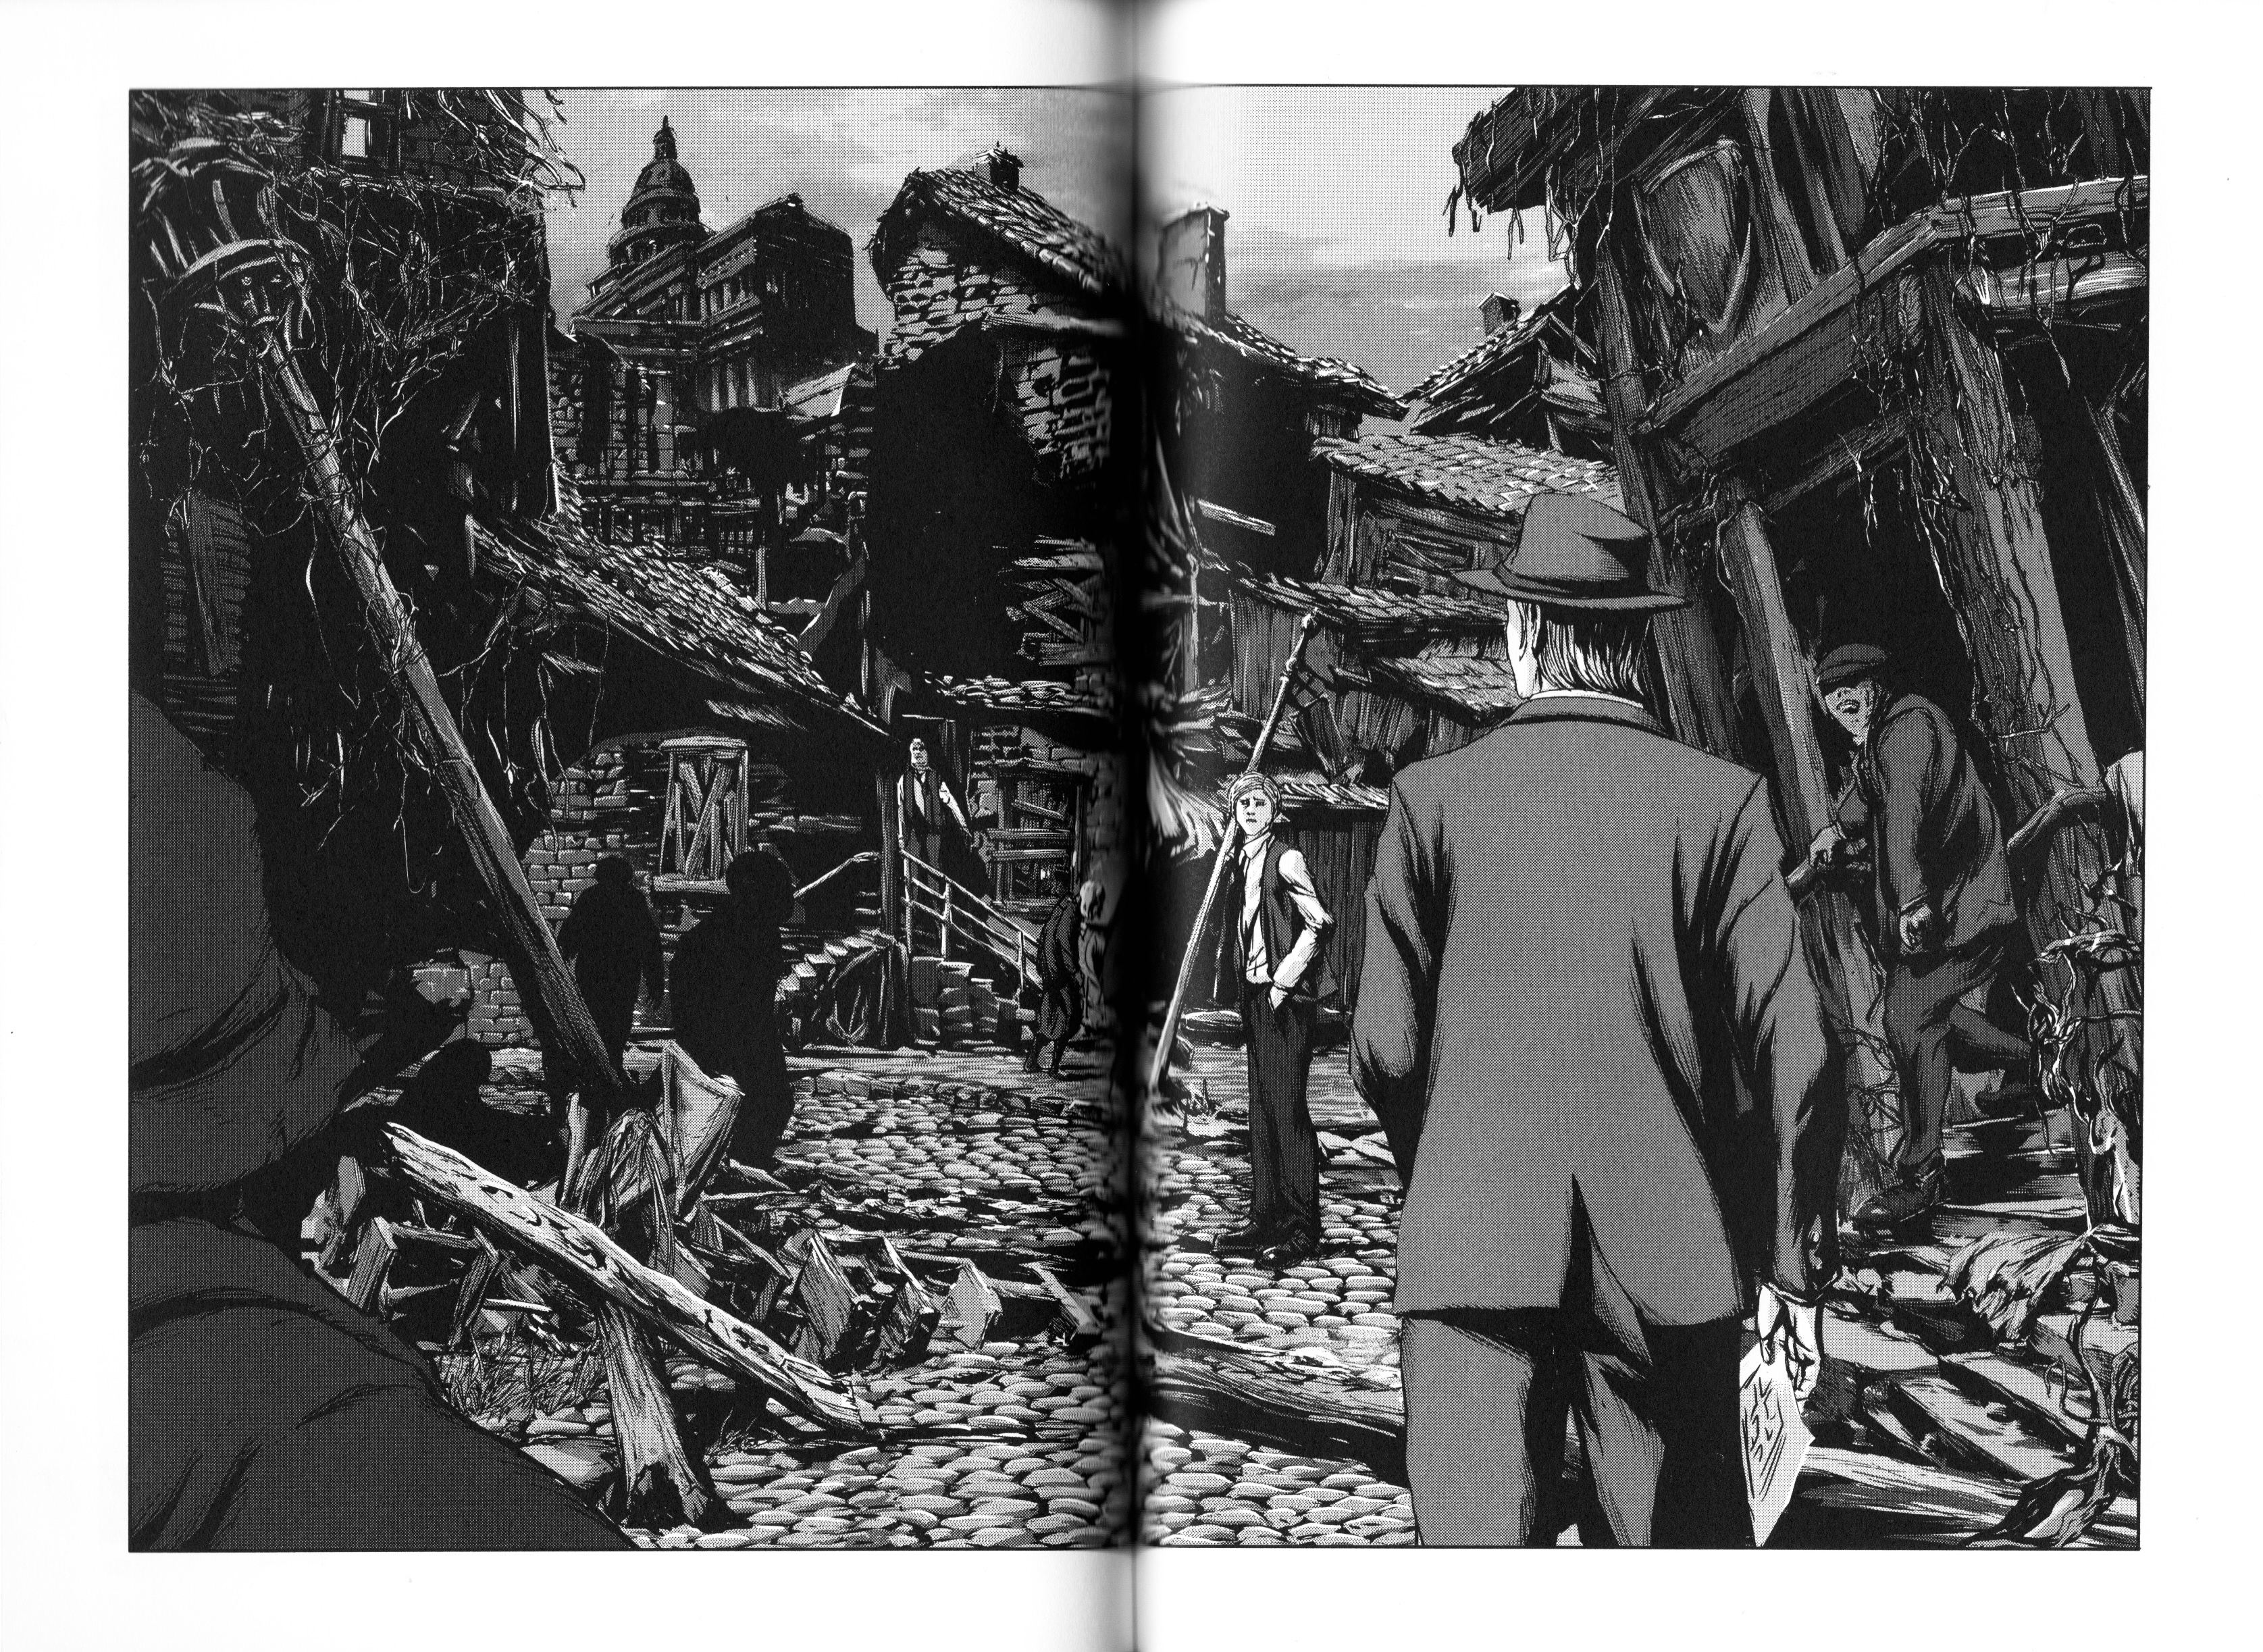 Les chefs d’oeuvre de Lovecraft Le cauchemar d’Innsmouth Avis review critique H.P. Lovecraft Gou Tanabe Ki-oon éditions Intégrale The shadow over innsmouth Manga horreur horreur Les Trésors du Nain